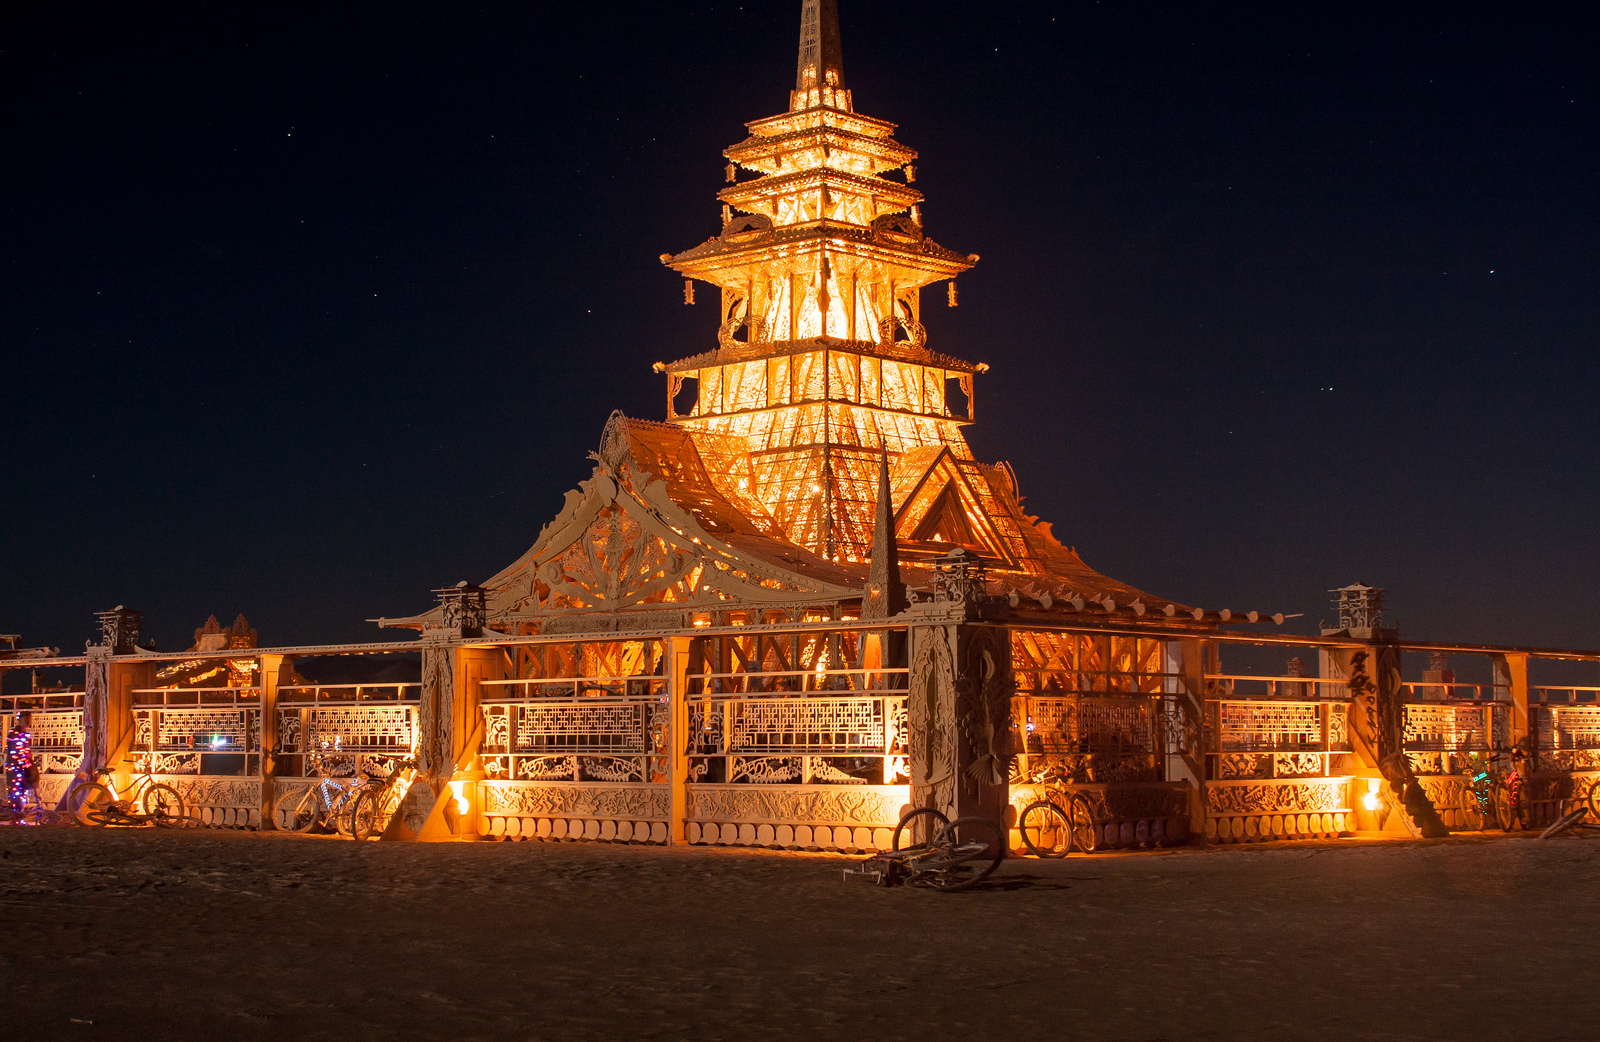 El Burning Man: un festival lleno de magia